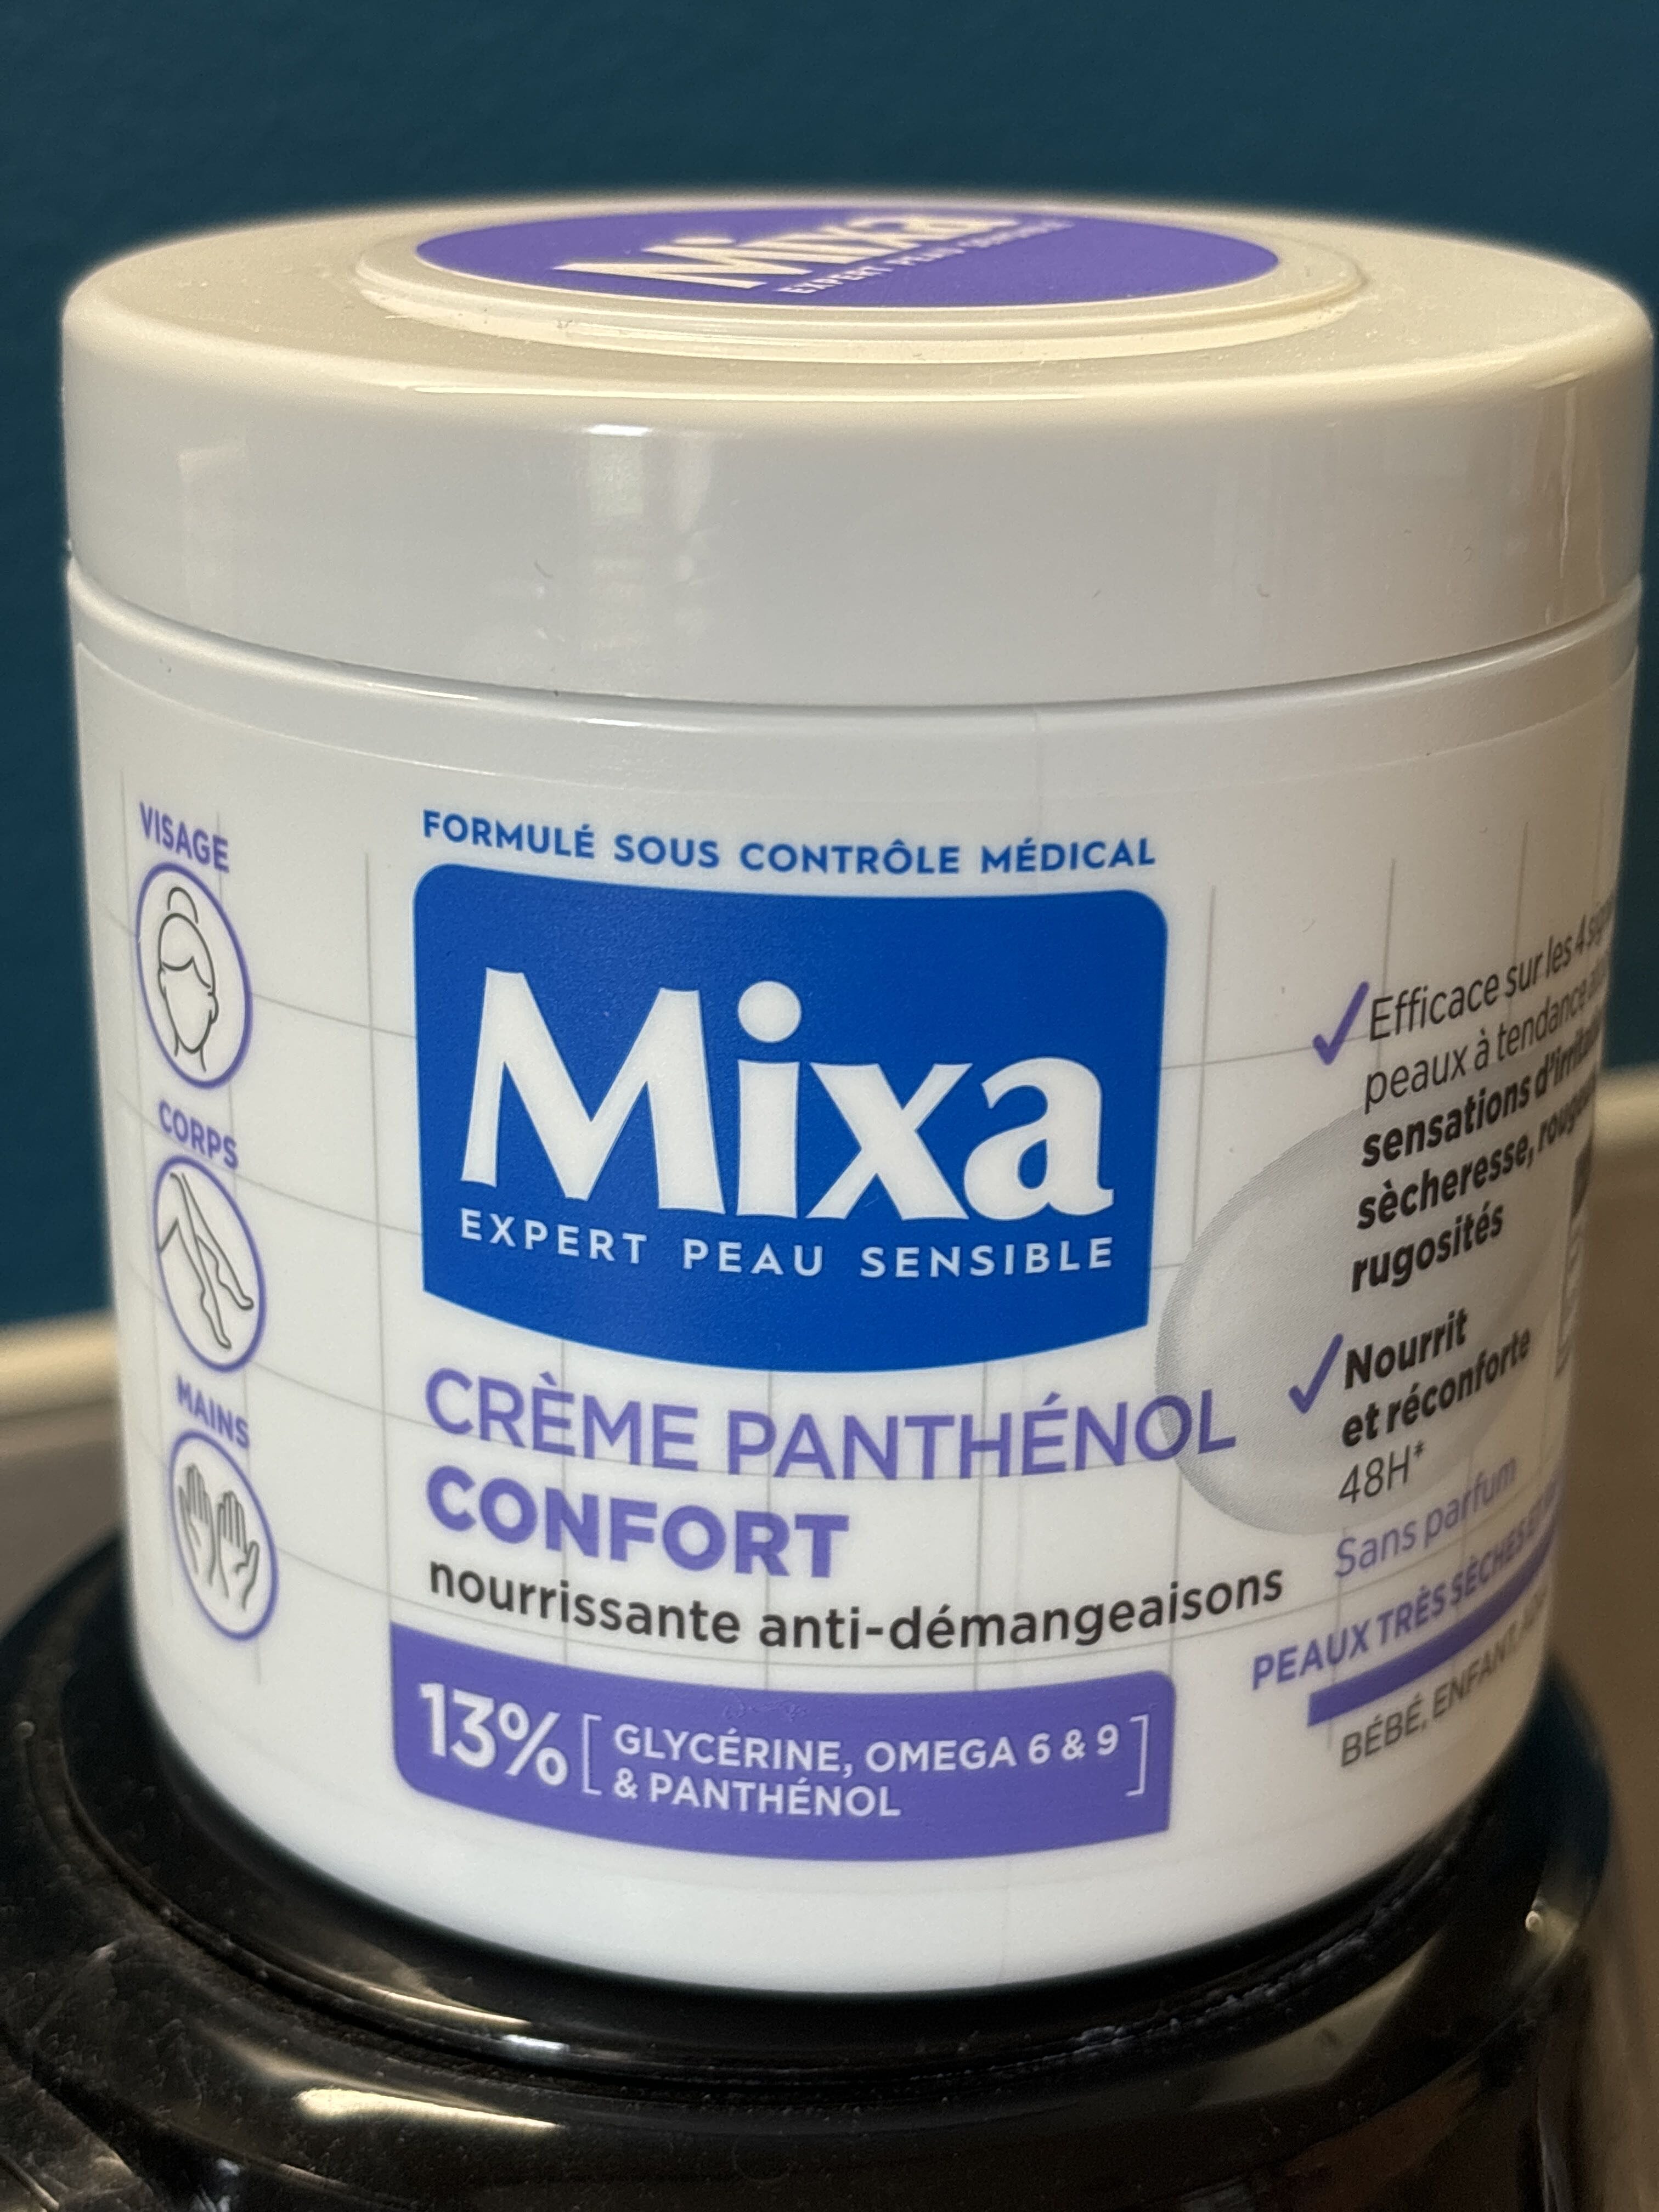 Mixa expert peau sensible - 製品 - fr